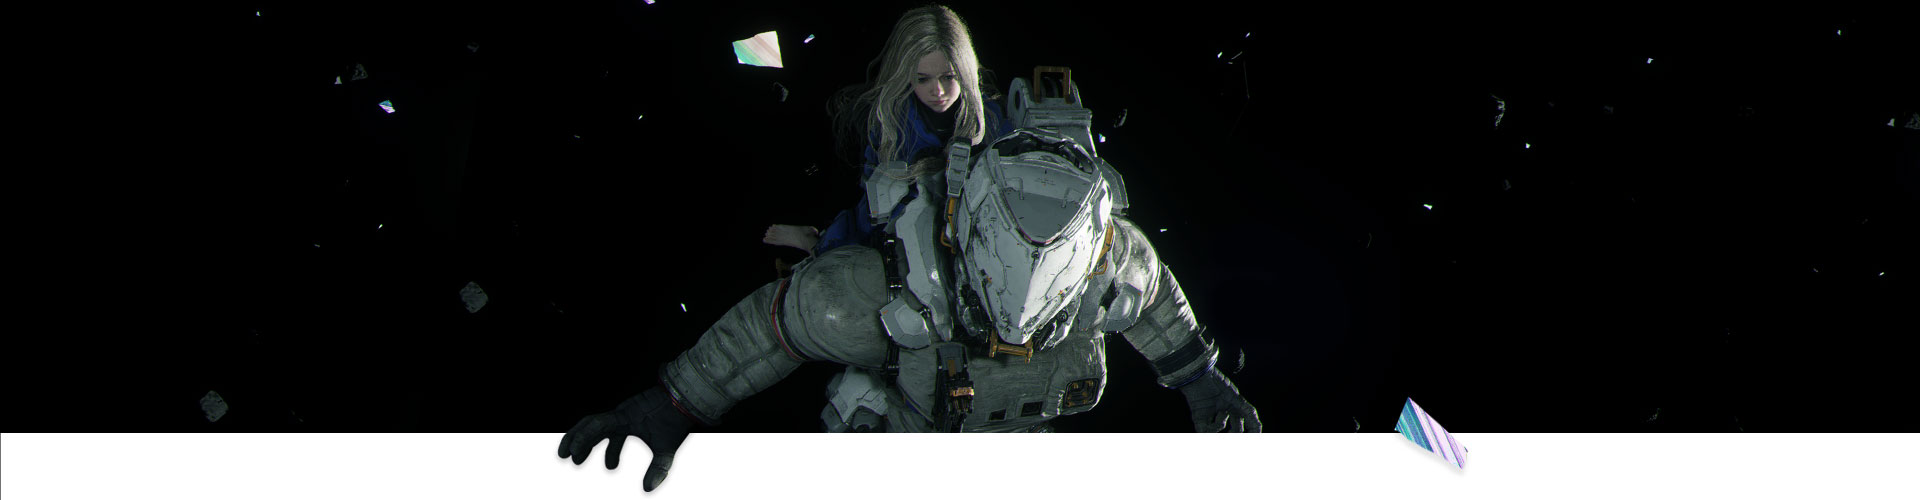 En jente rir på en astronaut gjennom verdensrommet